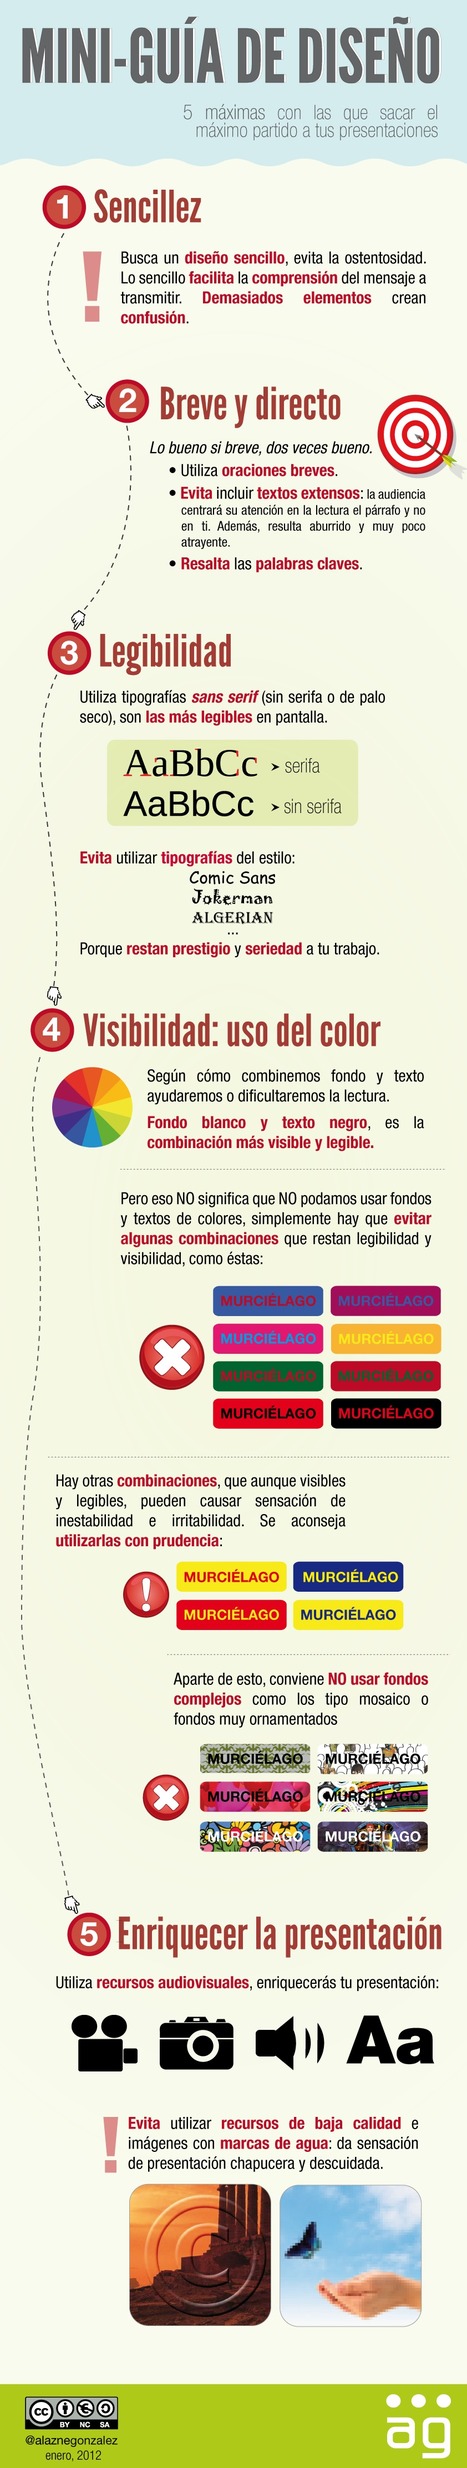 Mini-guía de diseño para presentaciones (Infografía) | Bibliotecas Escolares Argentinas | Scoop.it